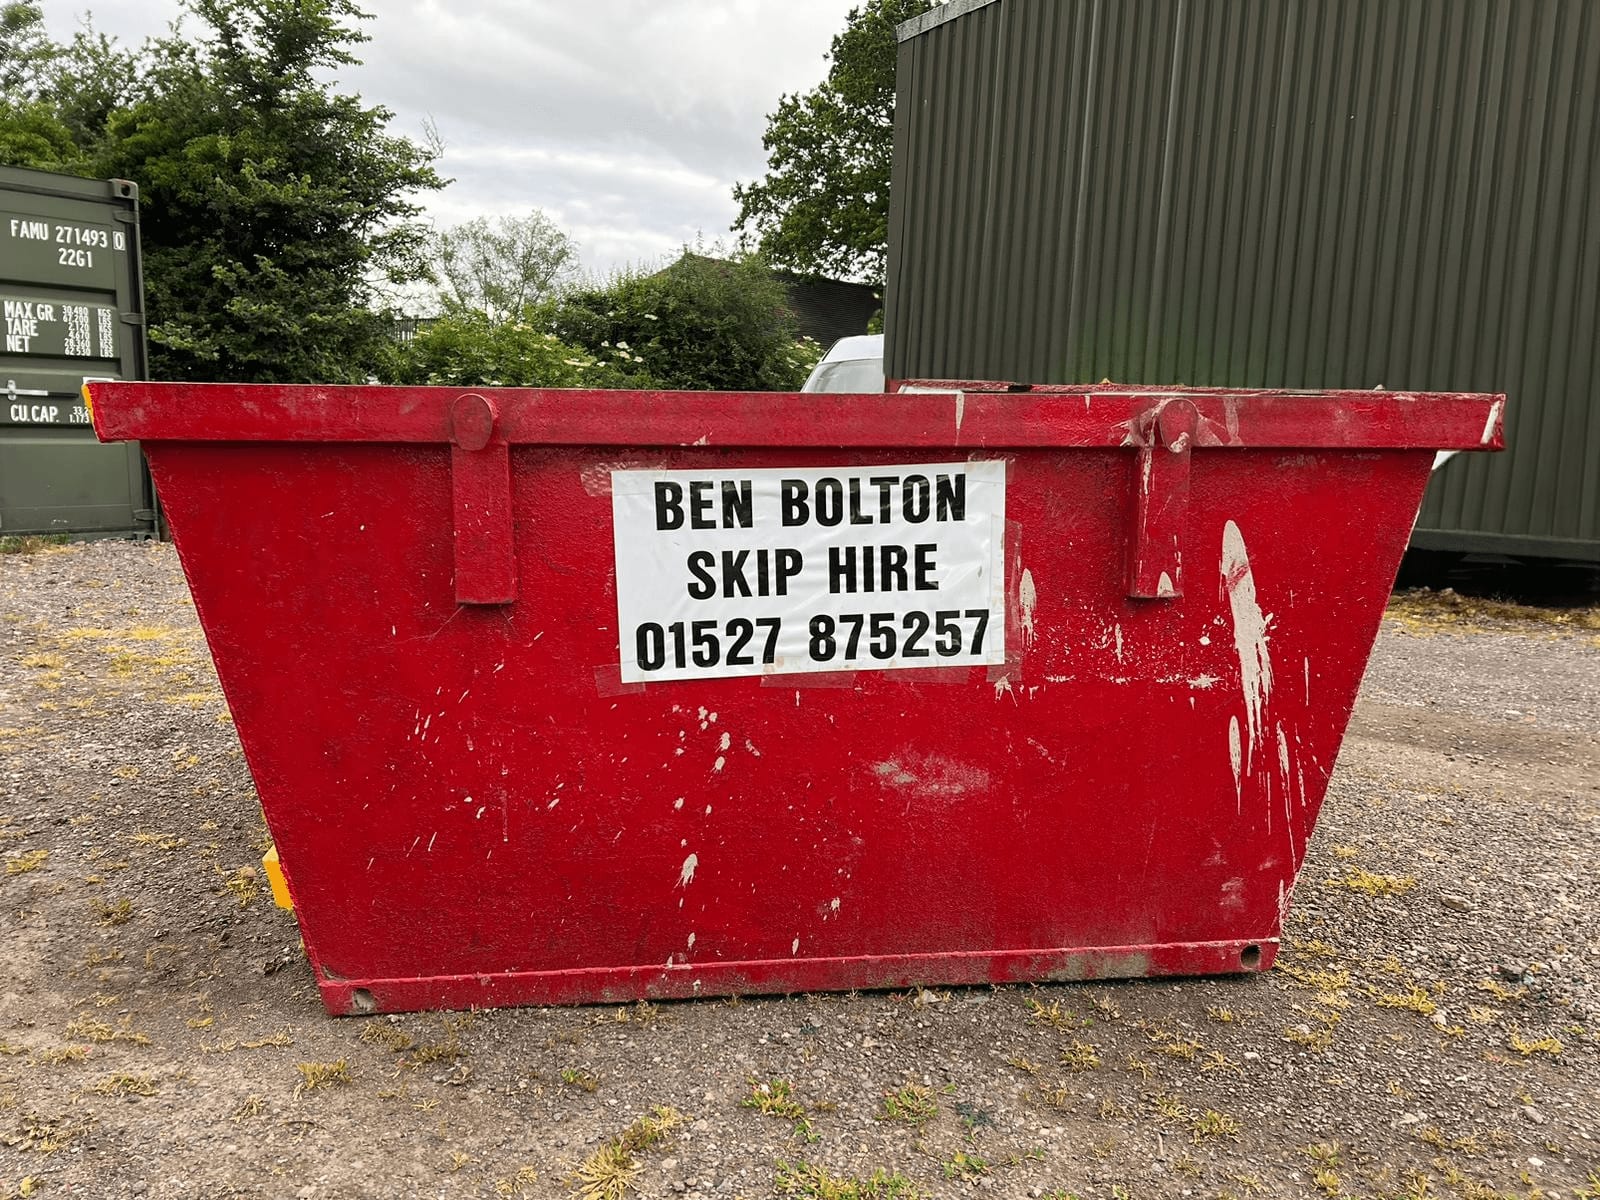 Ben Bolton Skip Hire Bromsgrove 01527 875257